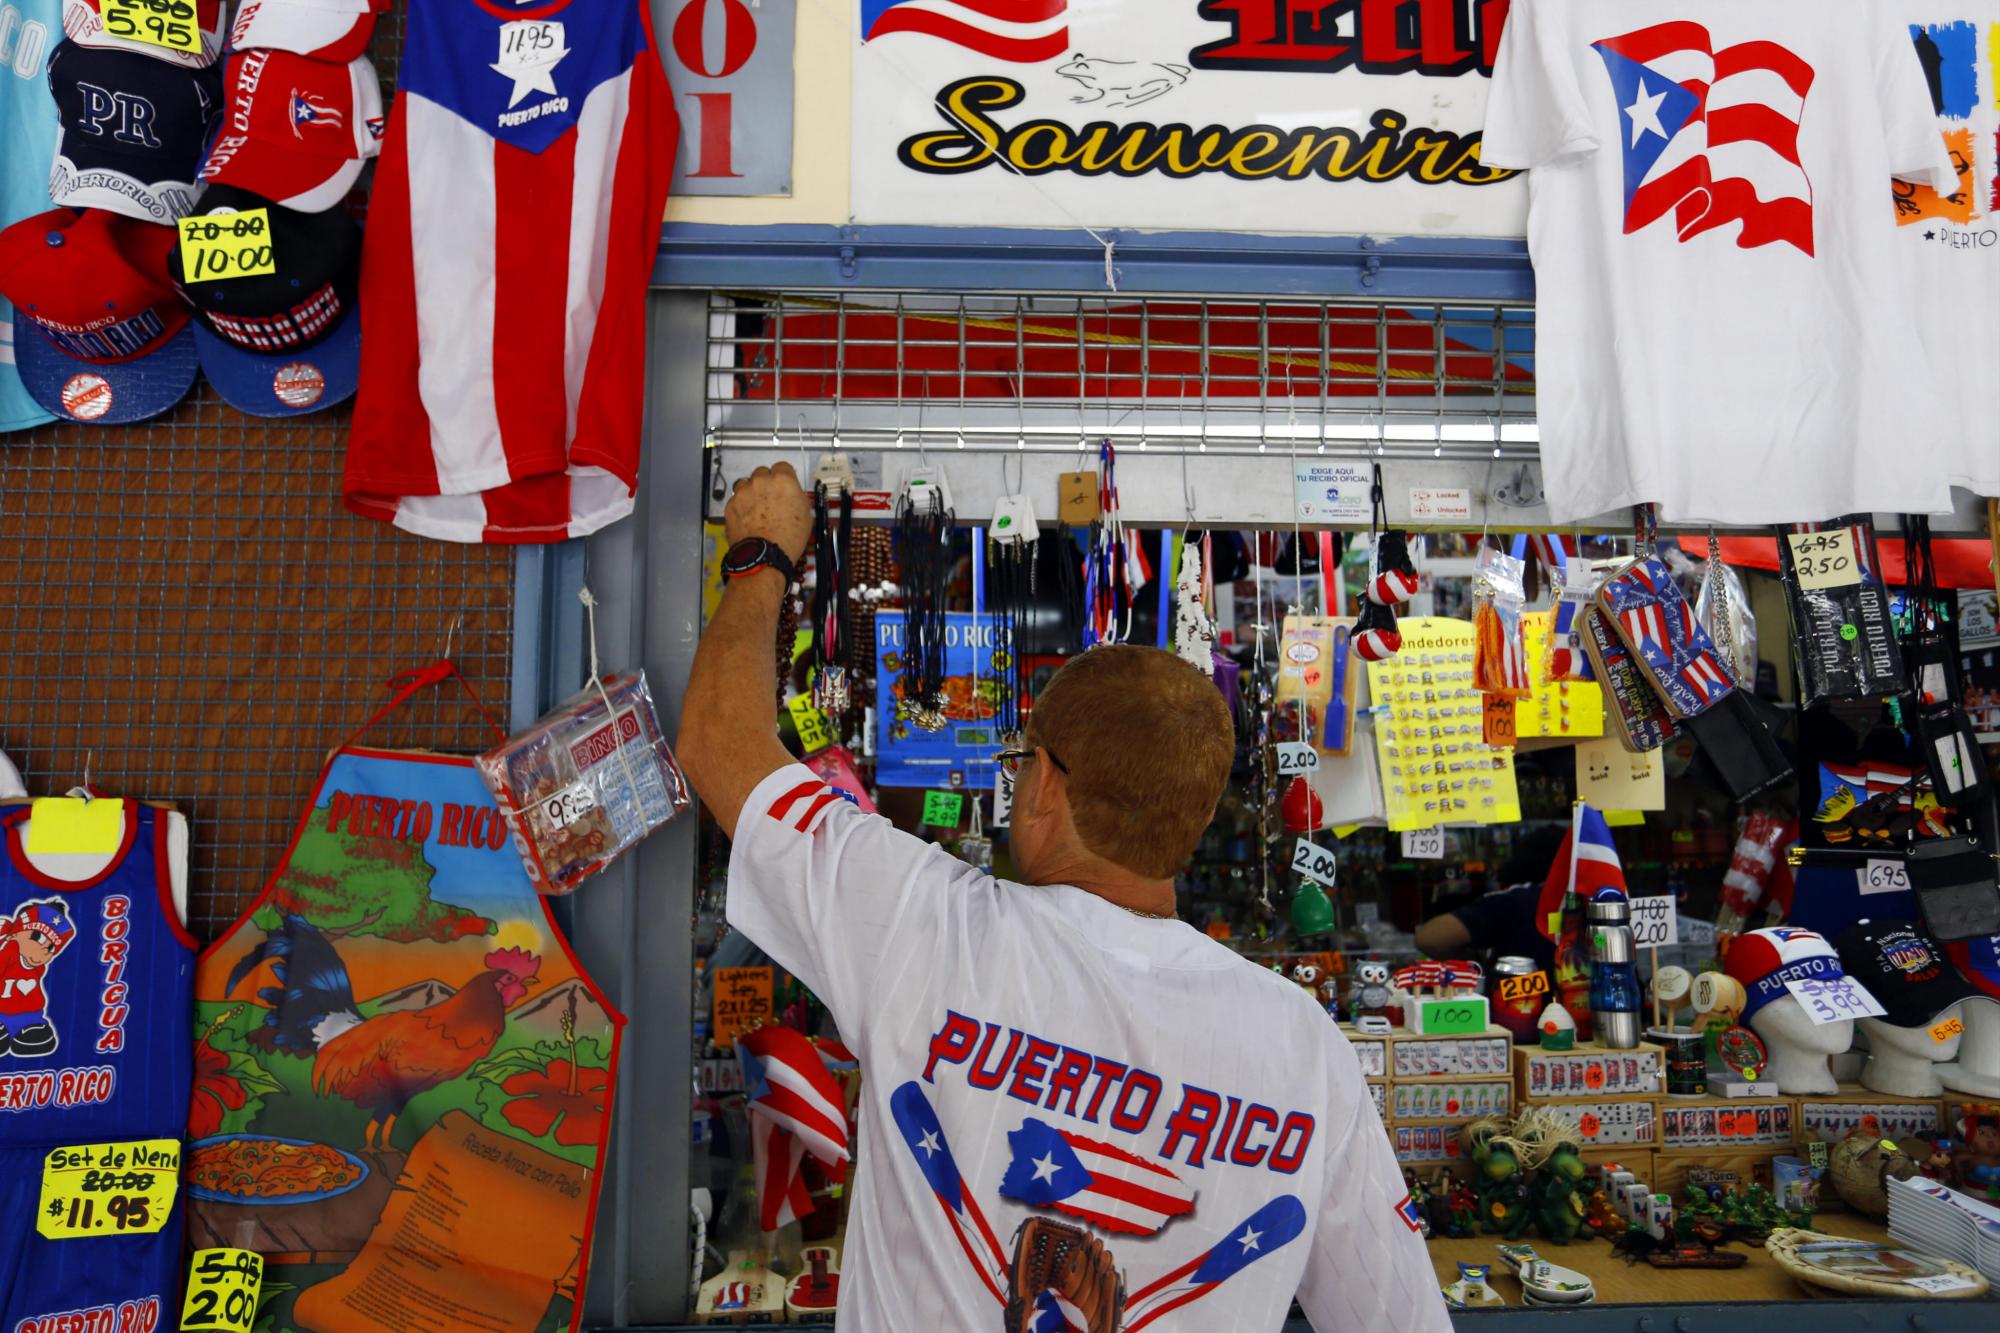 Eduardo Ruiz vende souvenirs en San Juan y fue uno de los fans que se tiñó el pelo de rubio en una campaña liderada por el capitán y receptor del equipo de béisbol de Puerto Rico, Yadier Molina, en San Juan (P. Rico).